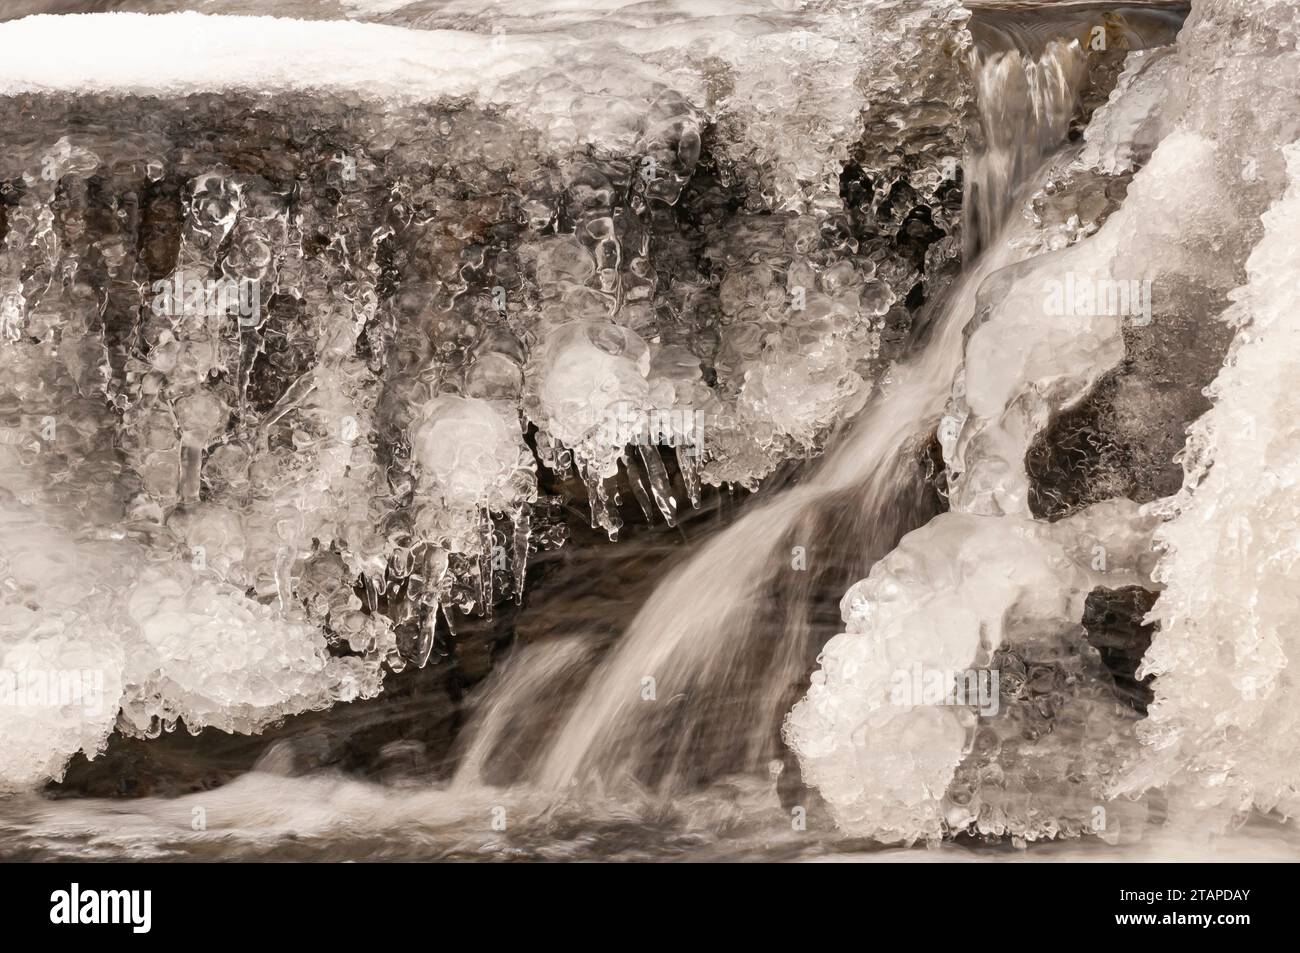 Une section d'une cascade gelée dans les hautes terres de Teesdale North Pennines, Co Durham, janvier Banque D'Images